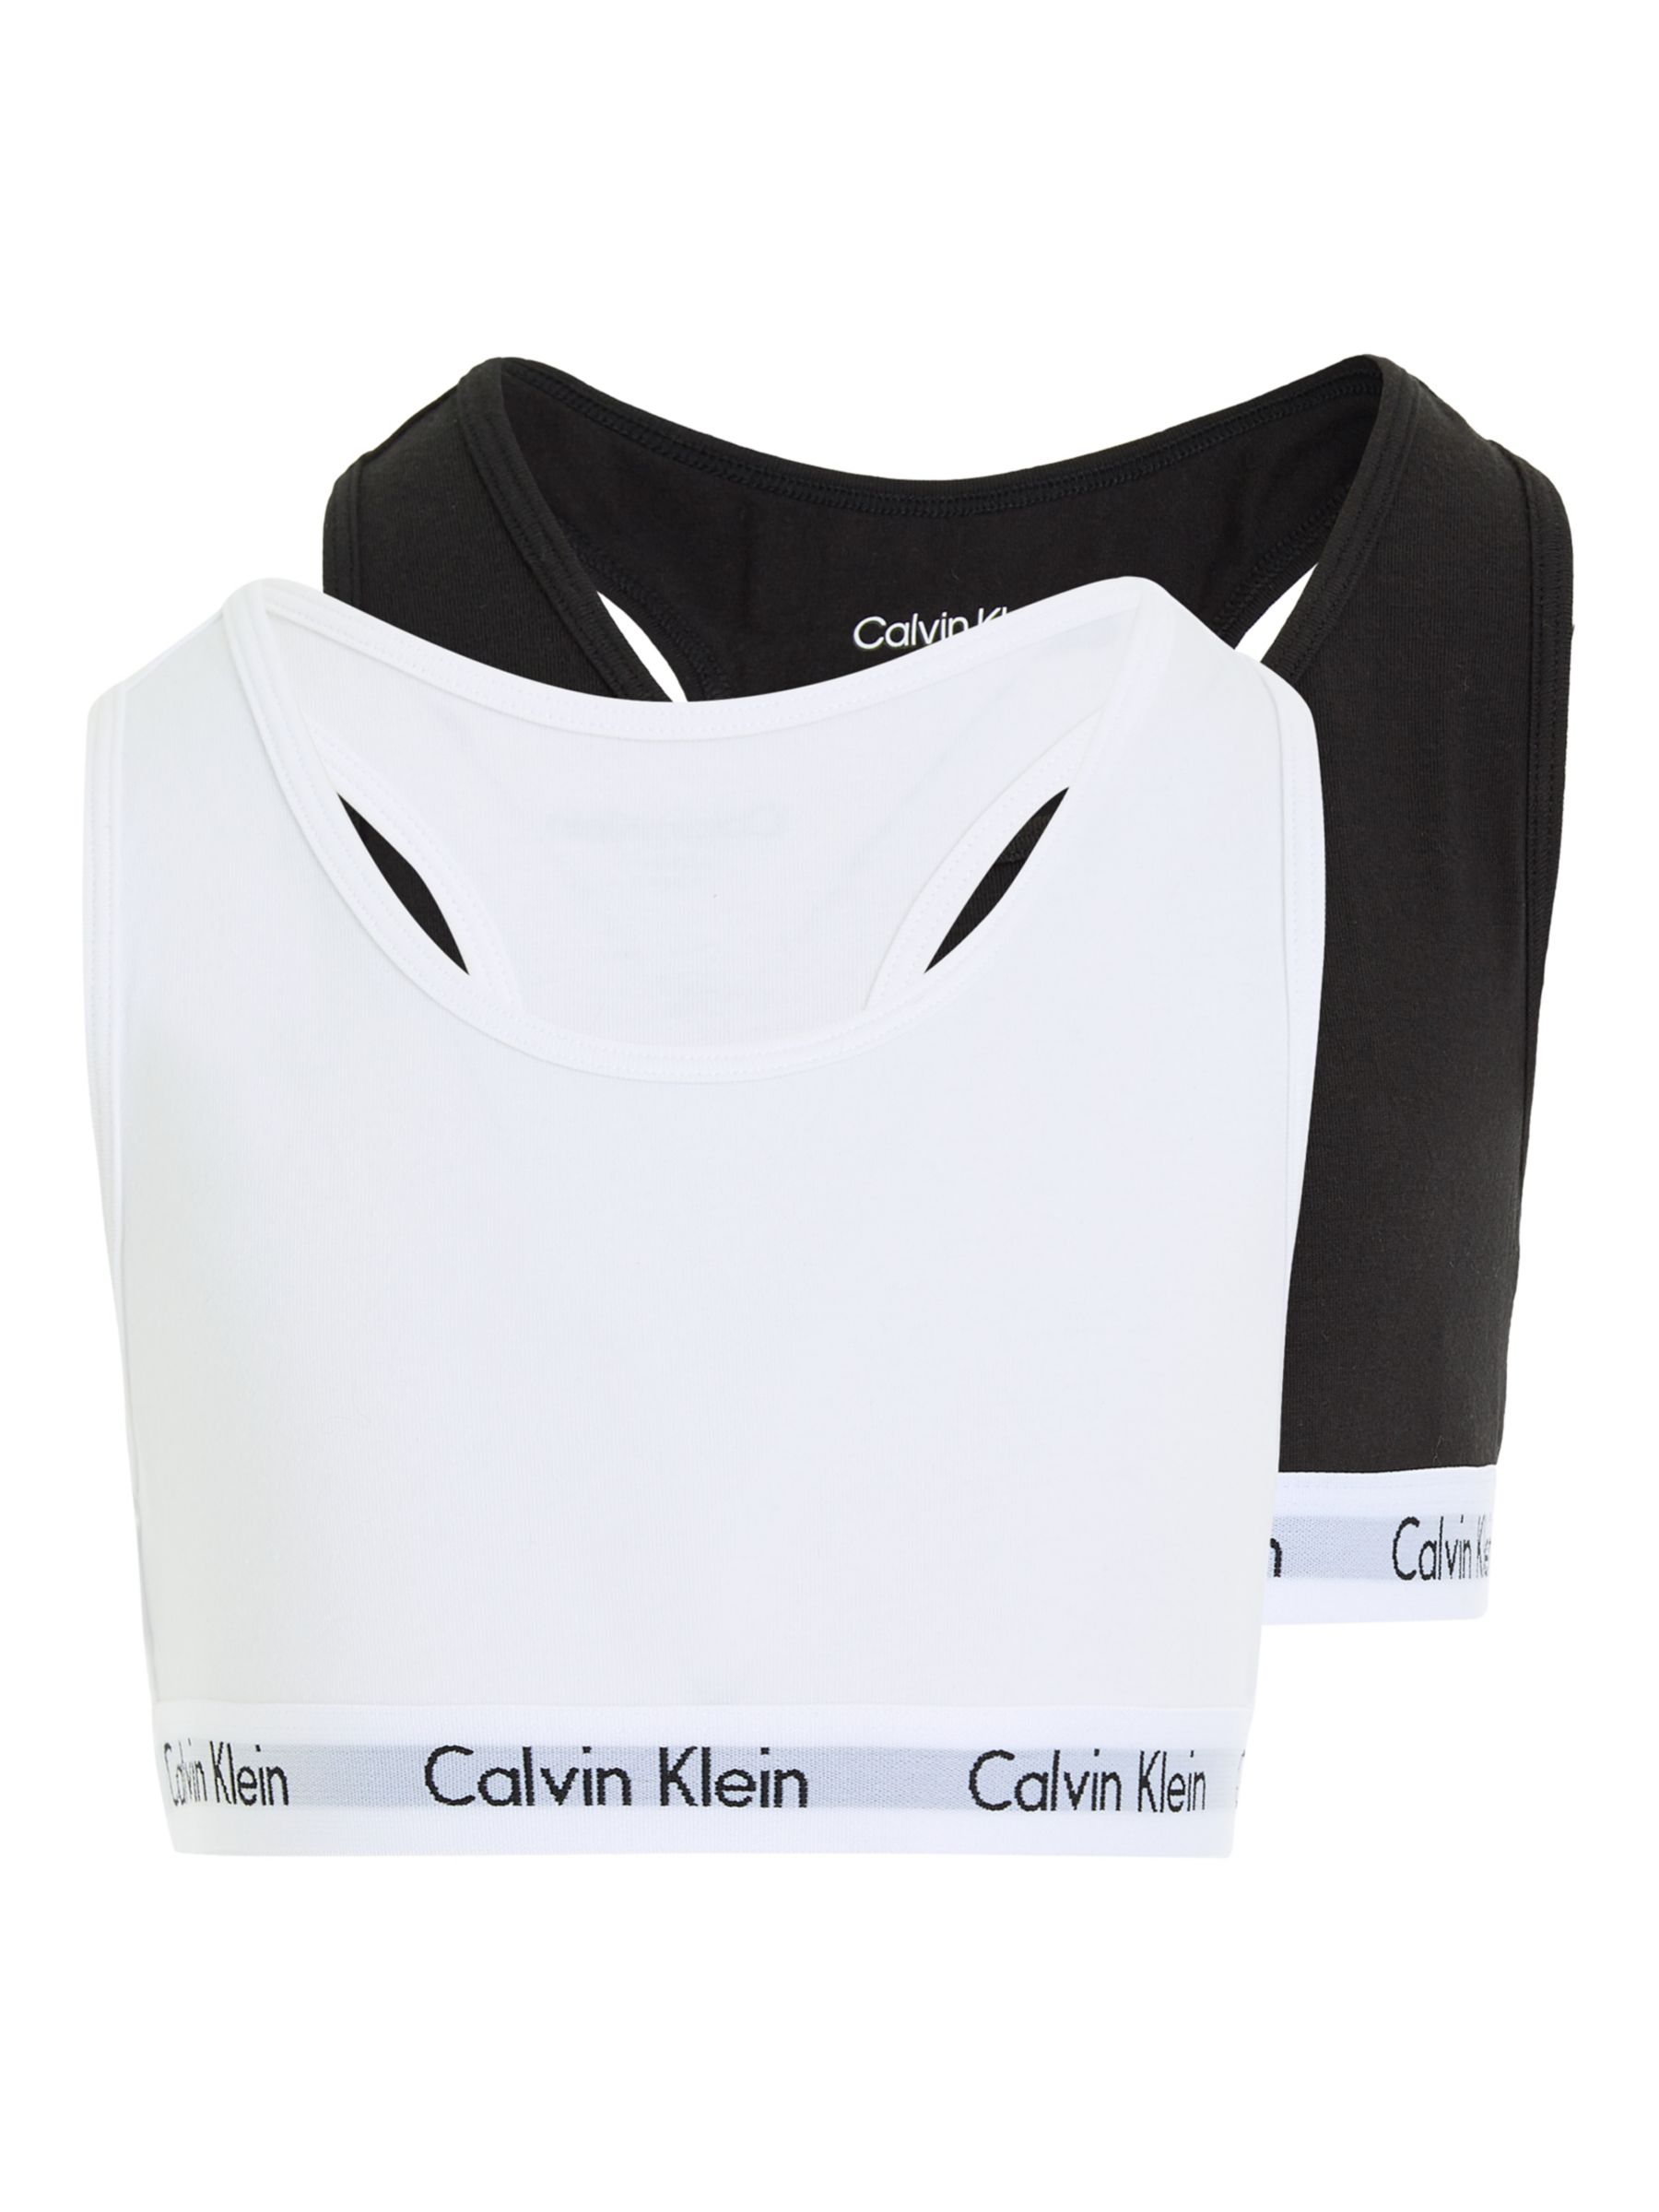 Calvin Klein Kids' Bralette, Pack of 2, Black/White at John Lewis ...